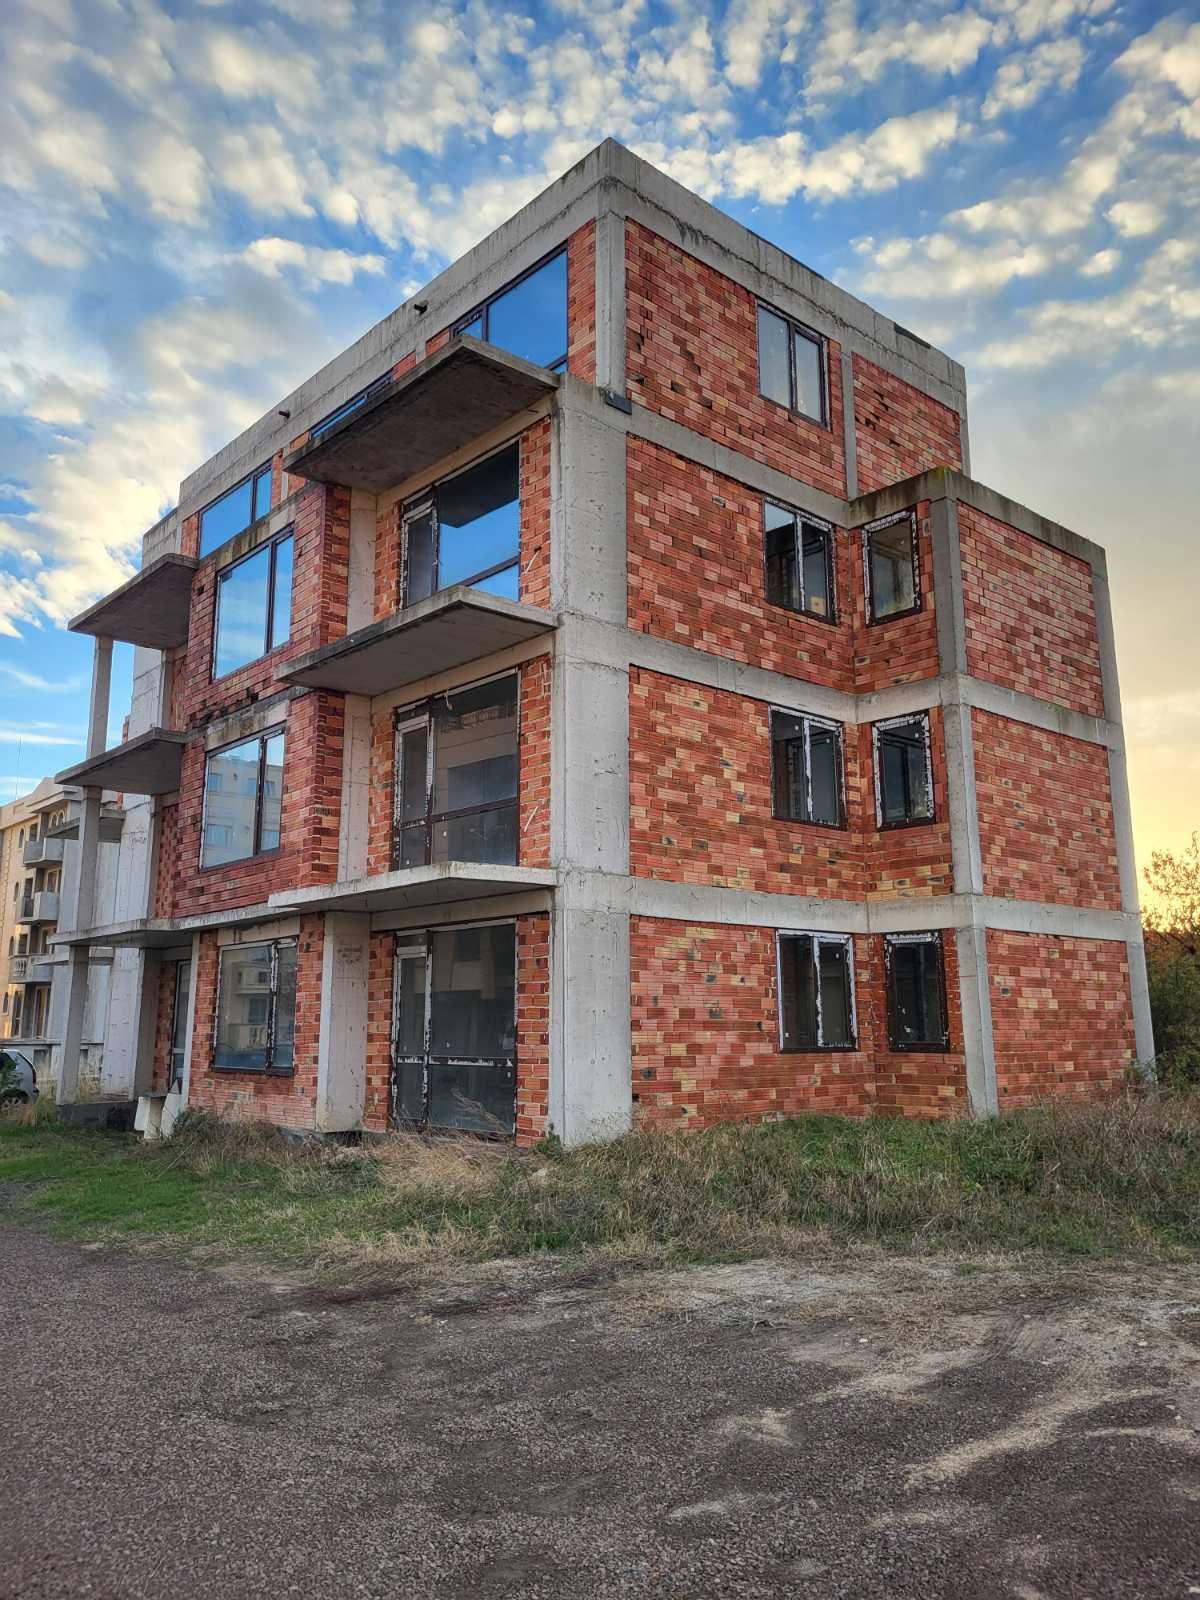 Тристаен апартамент в нова жилищна сграда без такса поддръжка в Равда